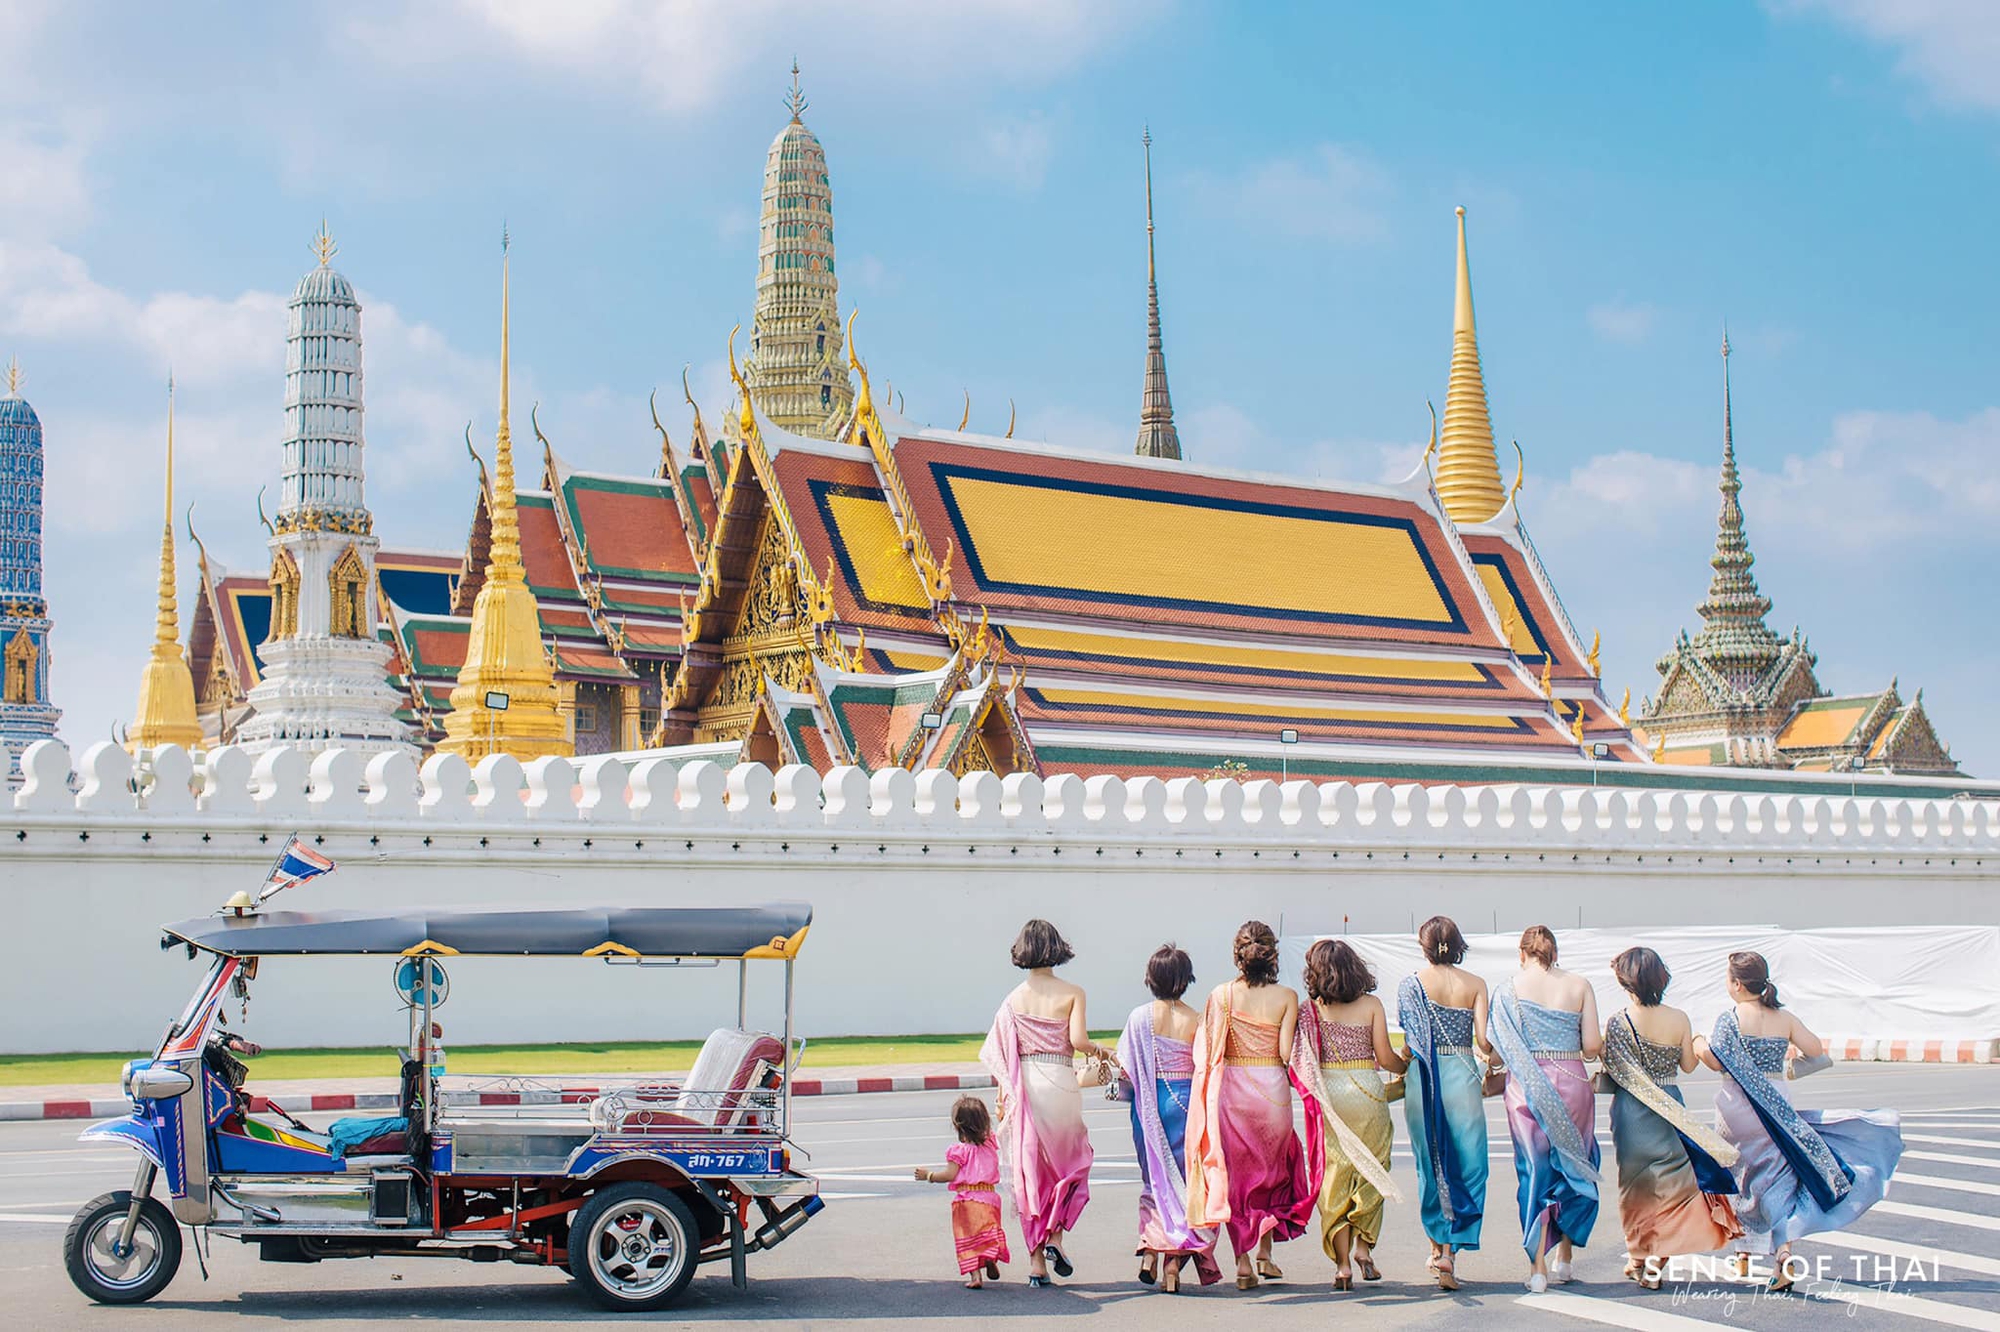 การเดินทางไปยังเมืองที่มีผู้เยี่ยมชมมากที่สุดในโลก: ชาวเวียดนามมีข้อได้เปรียบโดยมีค่าใช้จ่ายเพียง 6 ล้าน VND - รูปภาพ 5